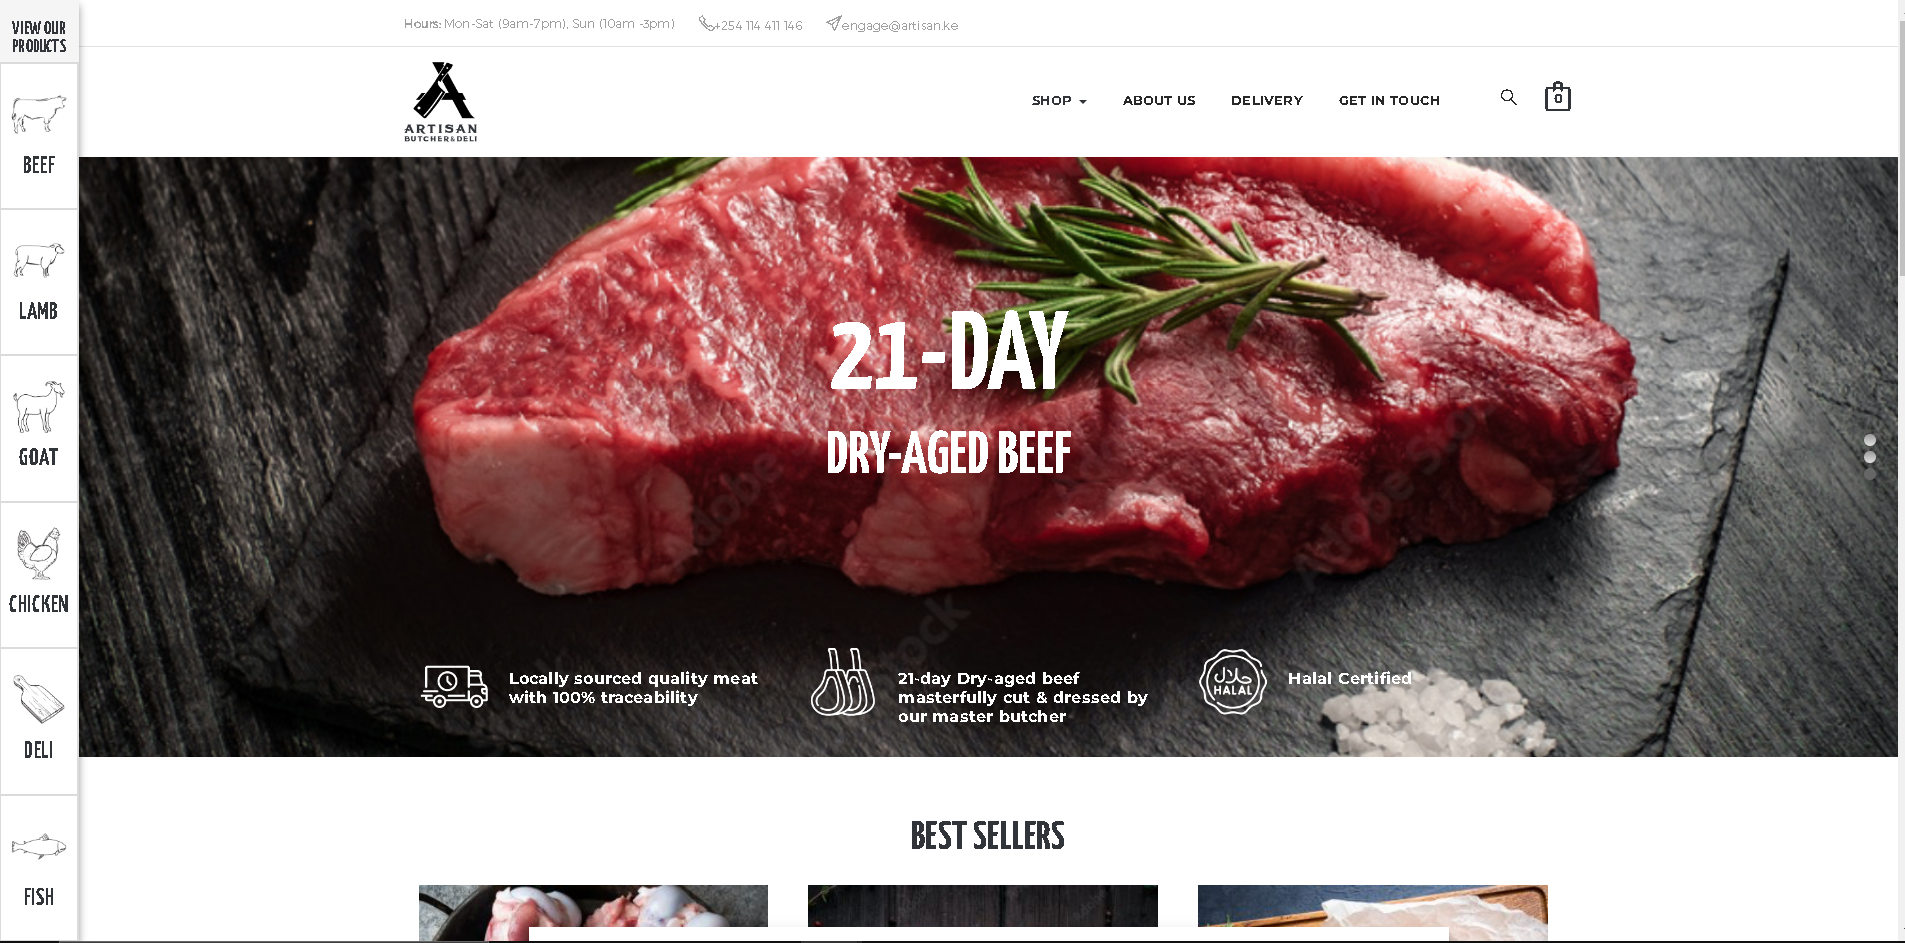 Development of eCommerce website for Artisan Butchery & Deli